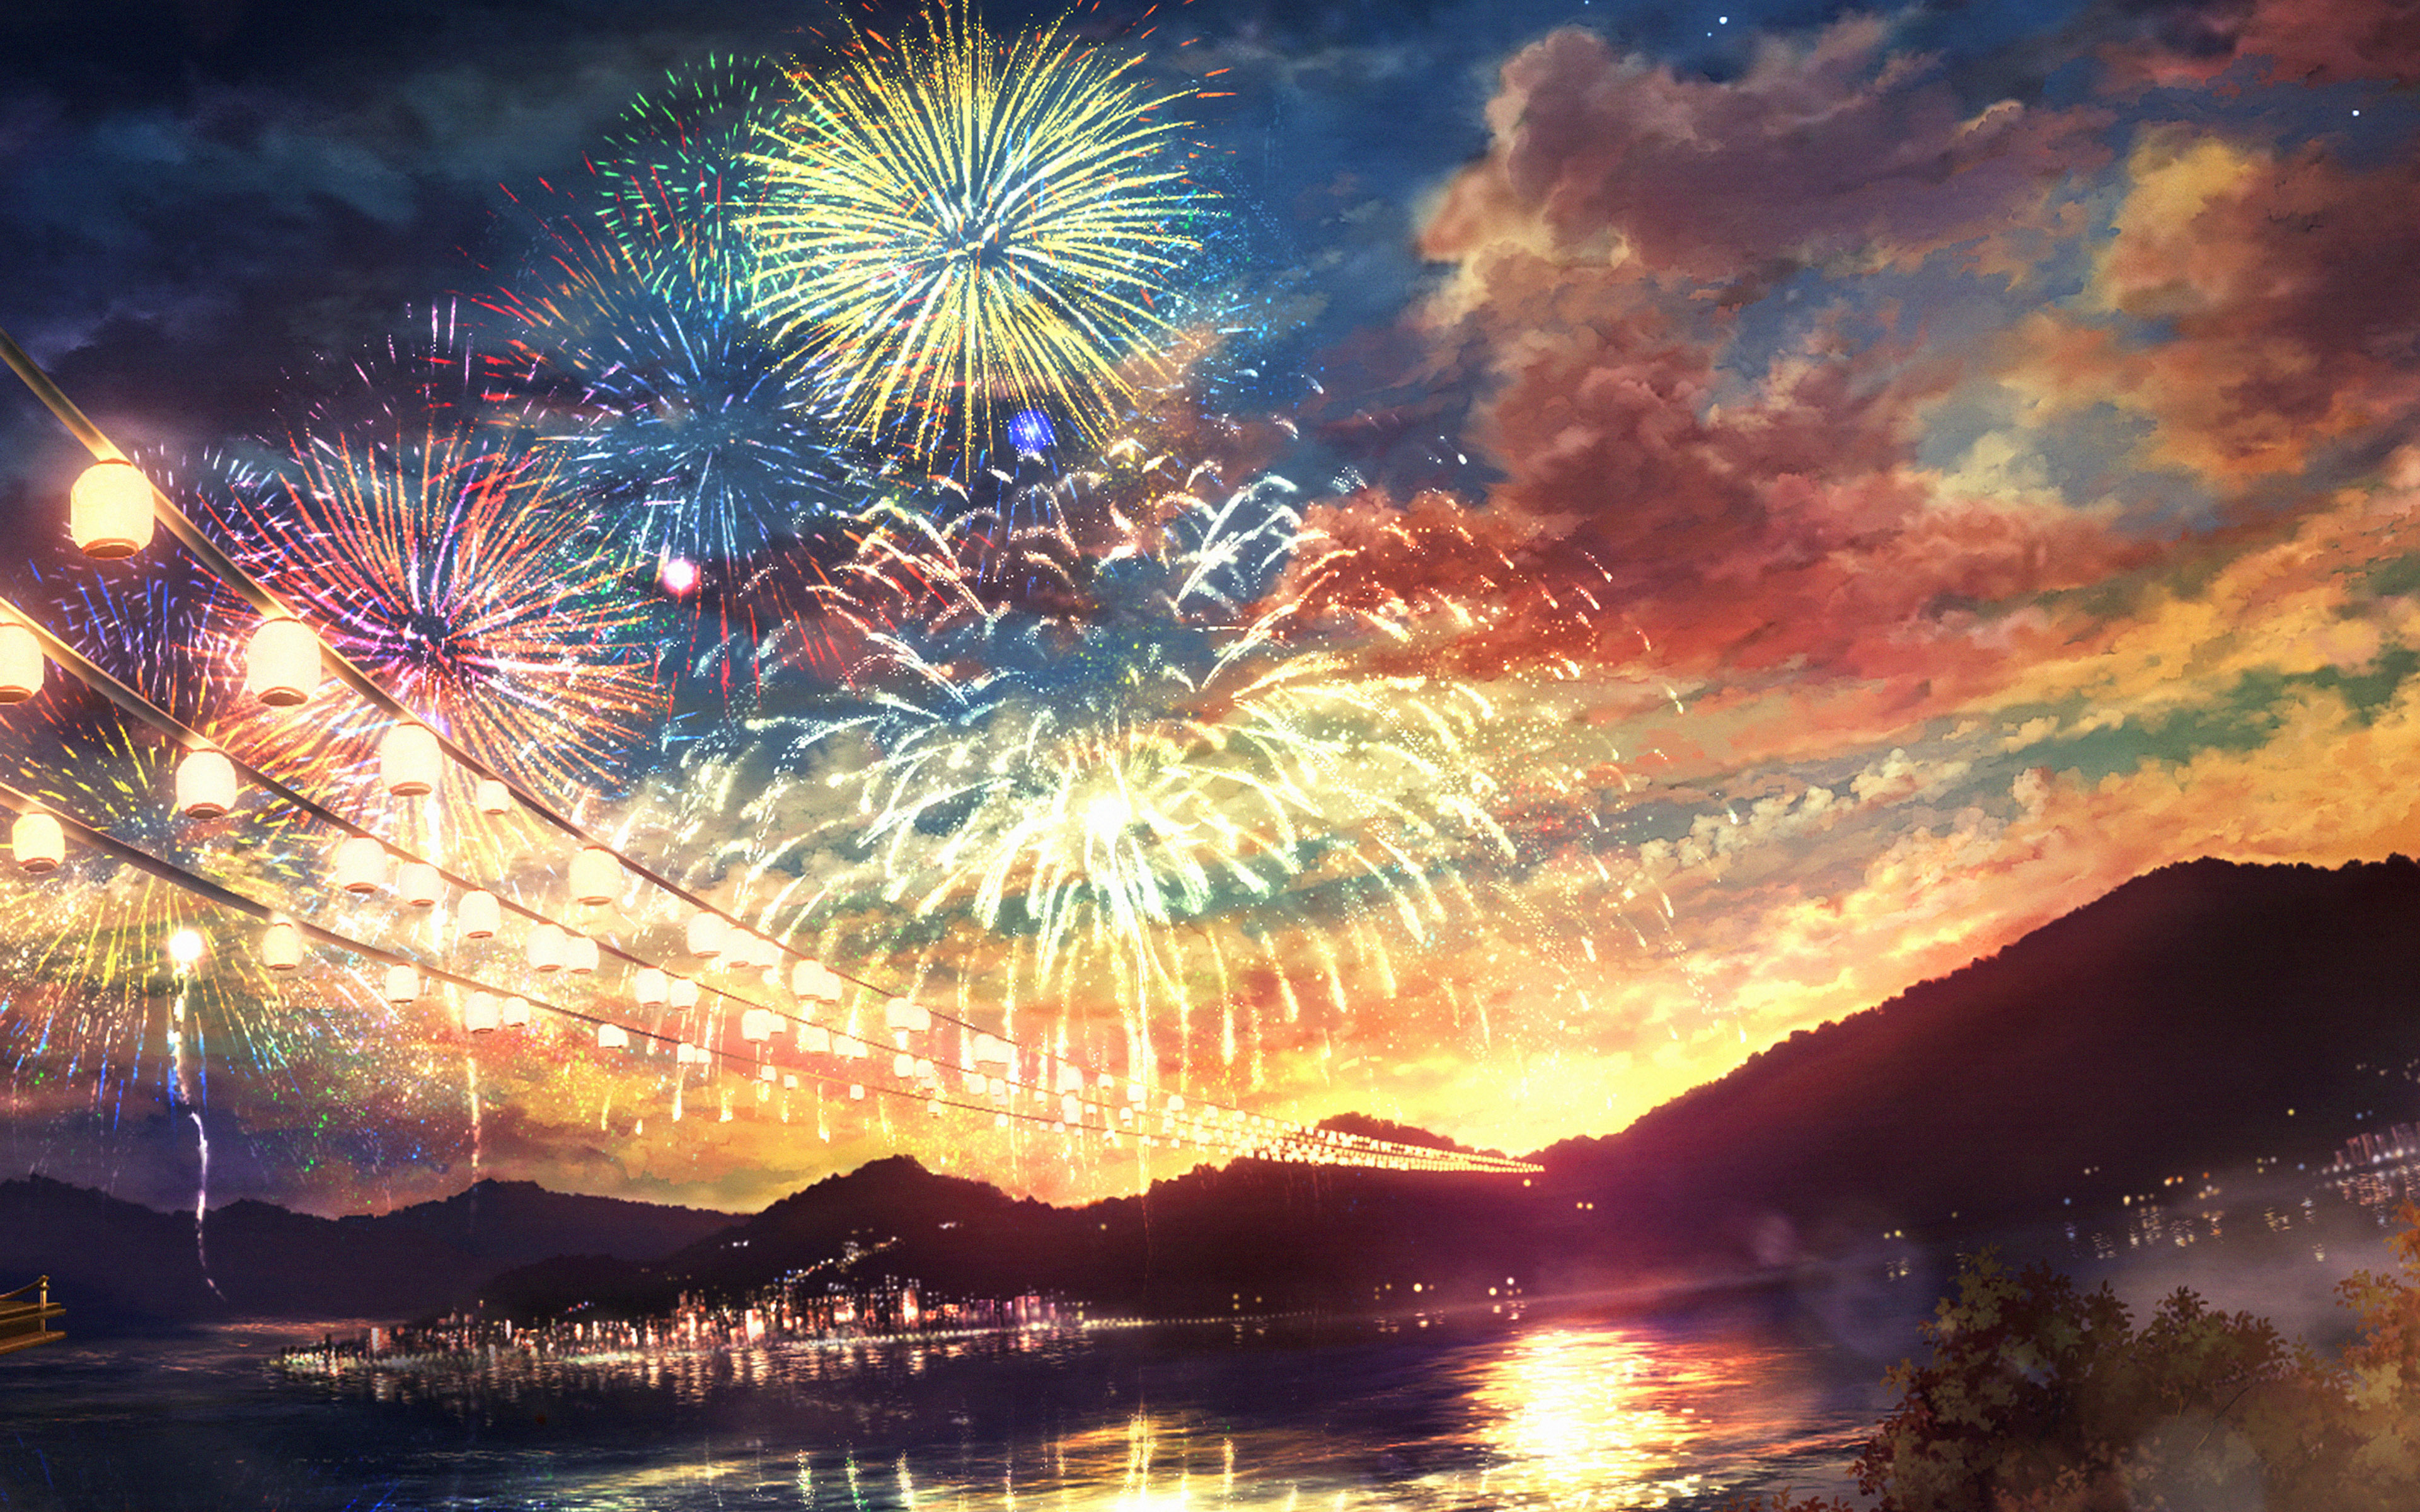 anime wallpaper 1440x900,himmel,natur,feuerwerk,wolke,betrachtung